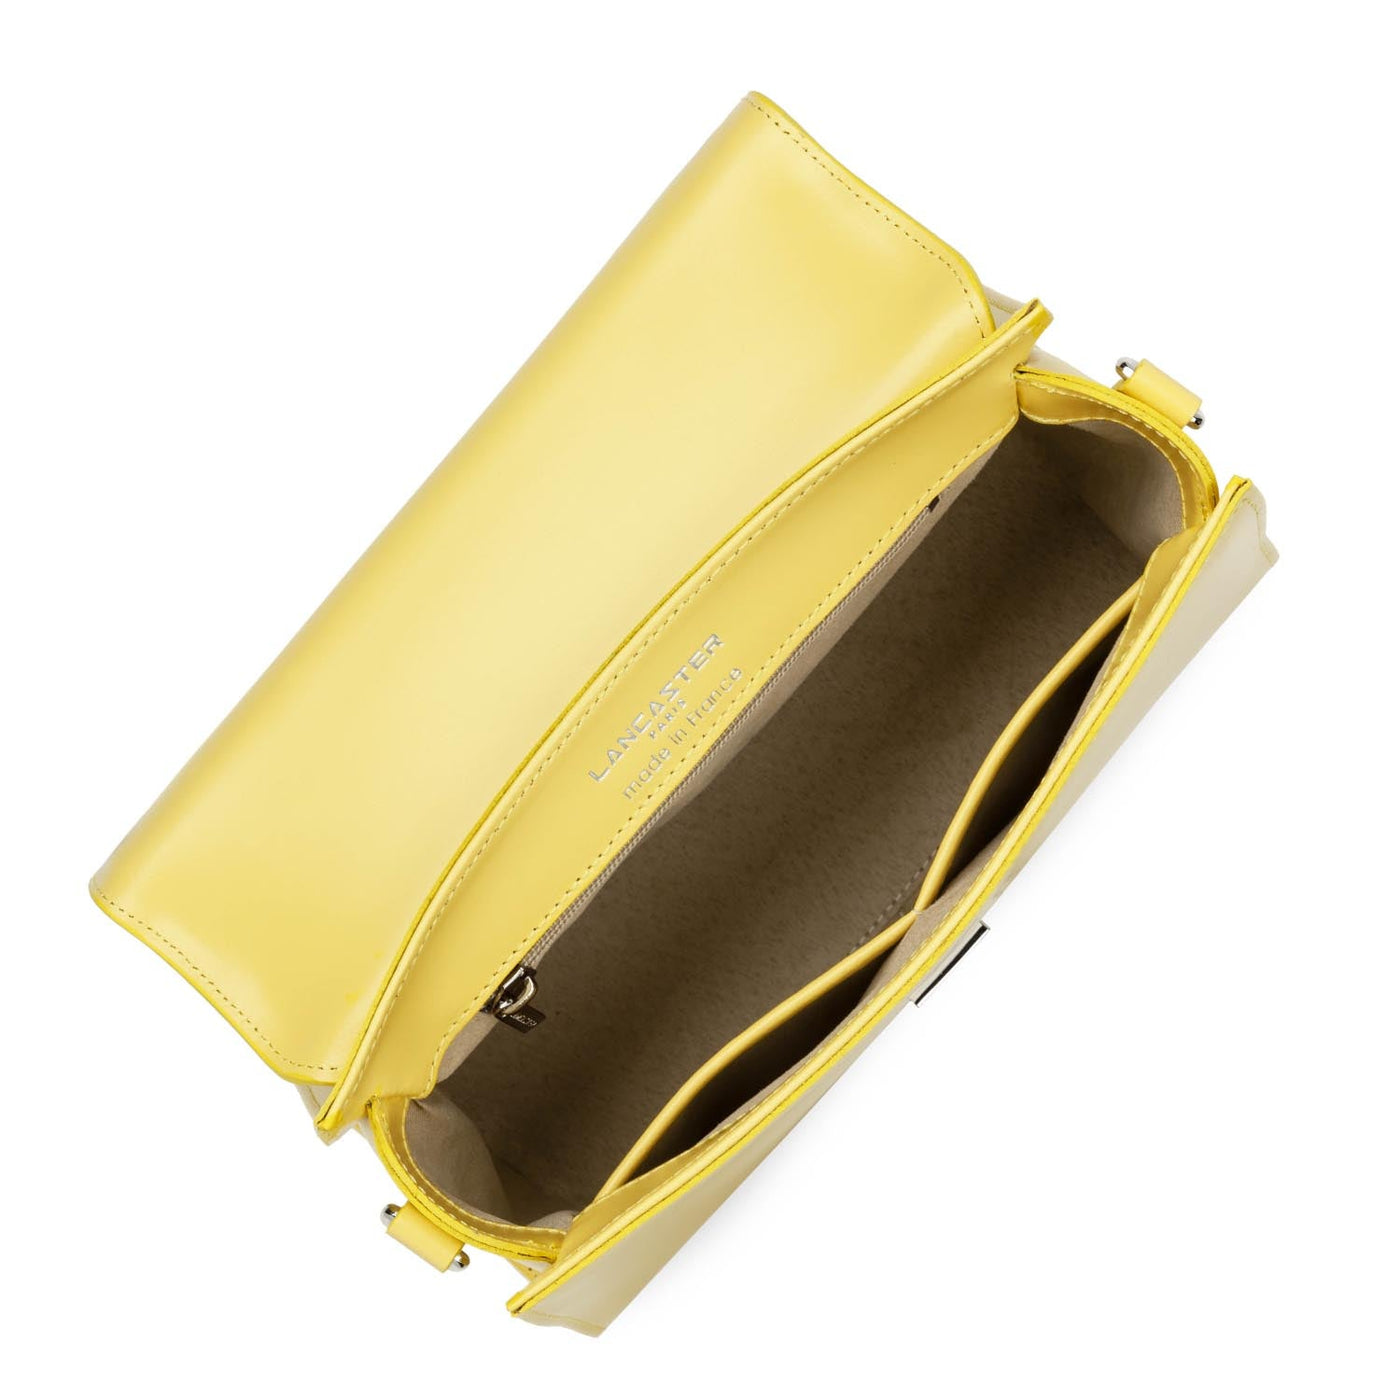 m handbag - suave even #couleur_poussin